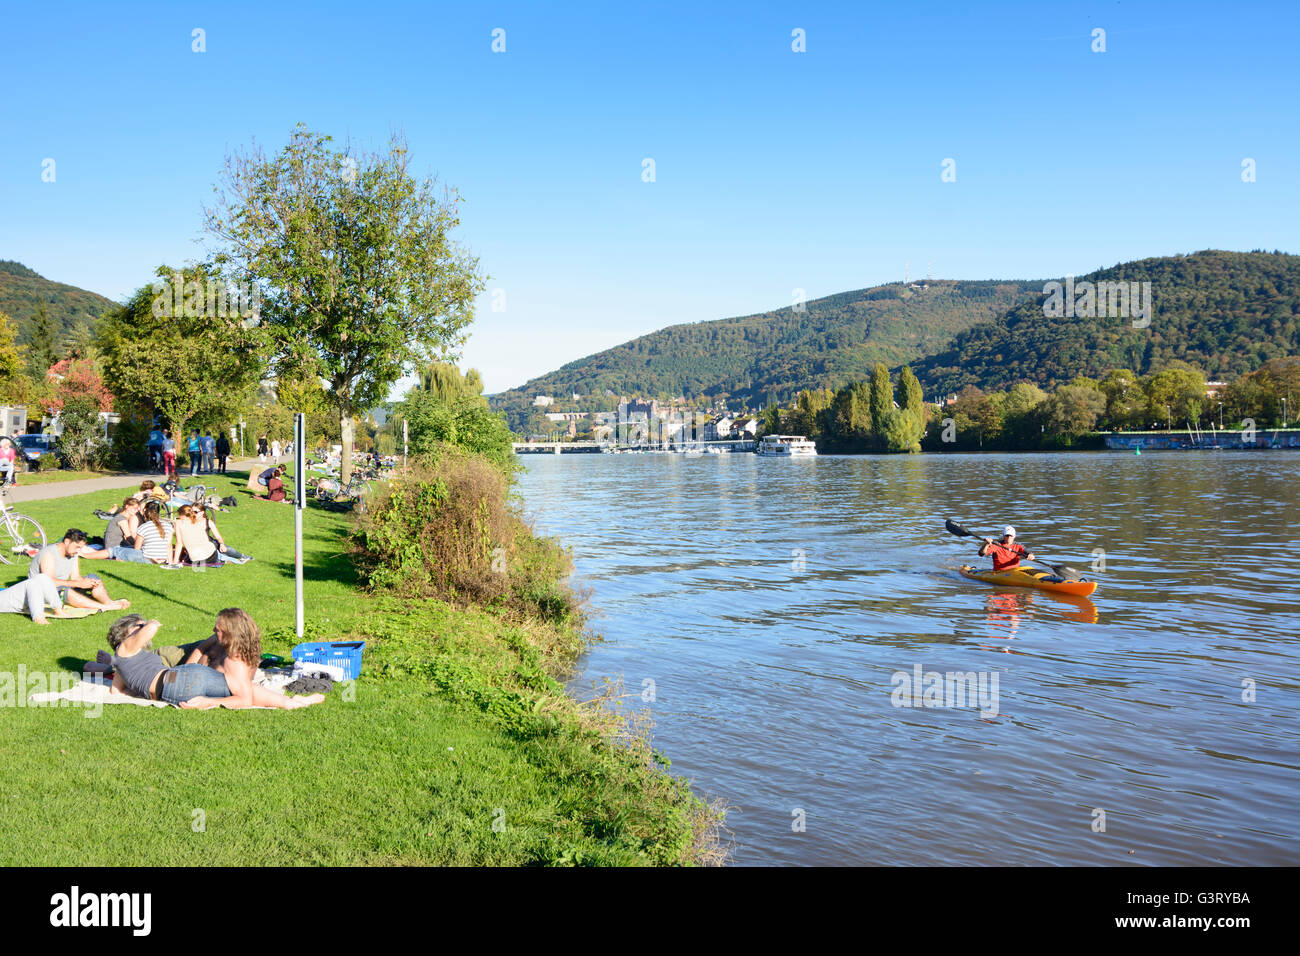 Rivière Neckar , le soleil sur le Neckar meadows et donnant sur la vieille ville avec son château et la montagne Königstuhl avec palettes Banque D'Images